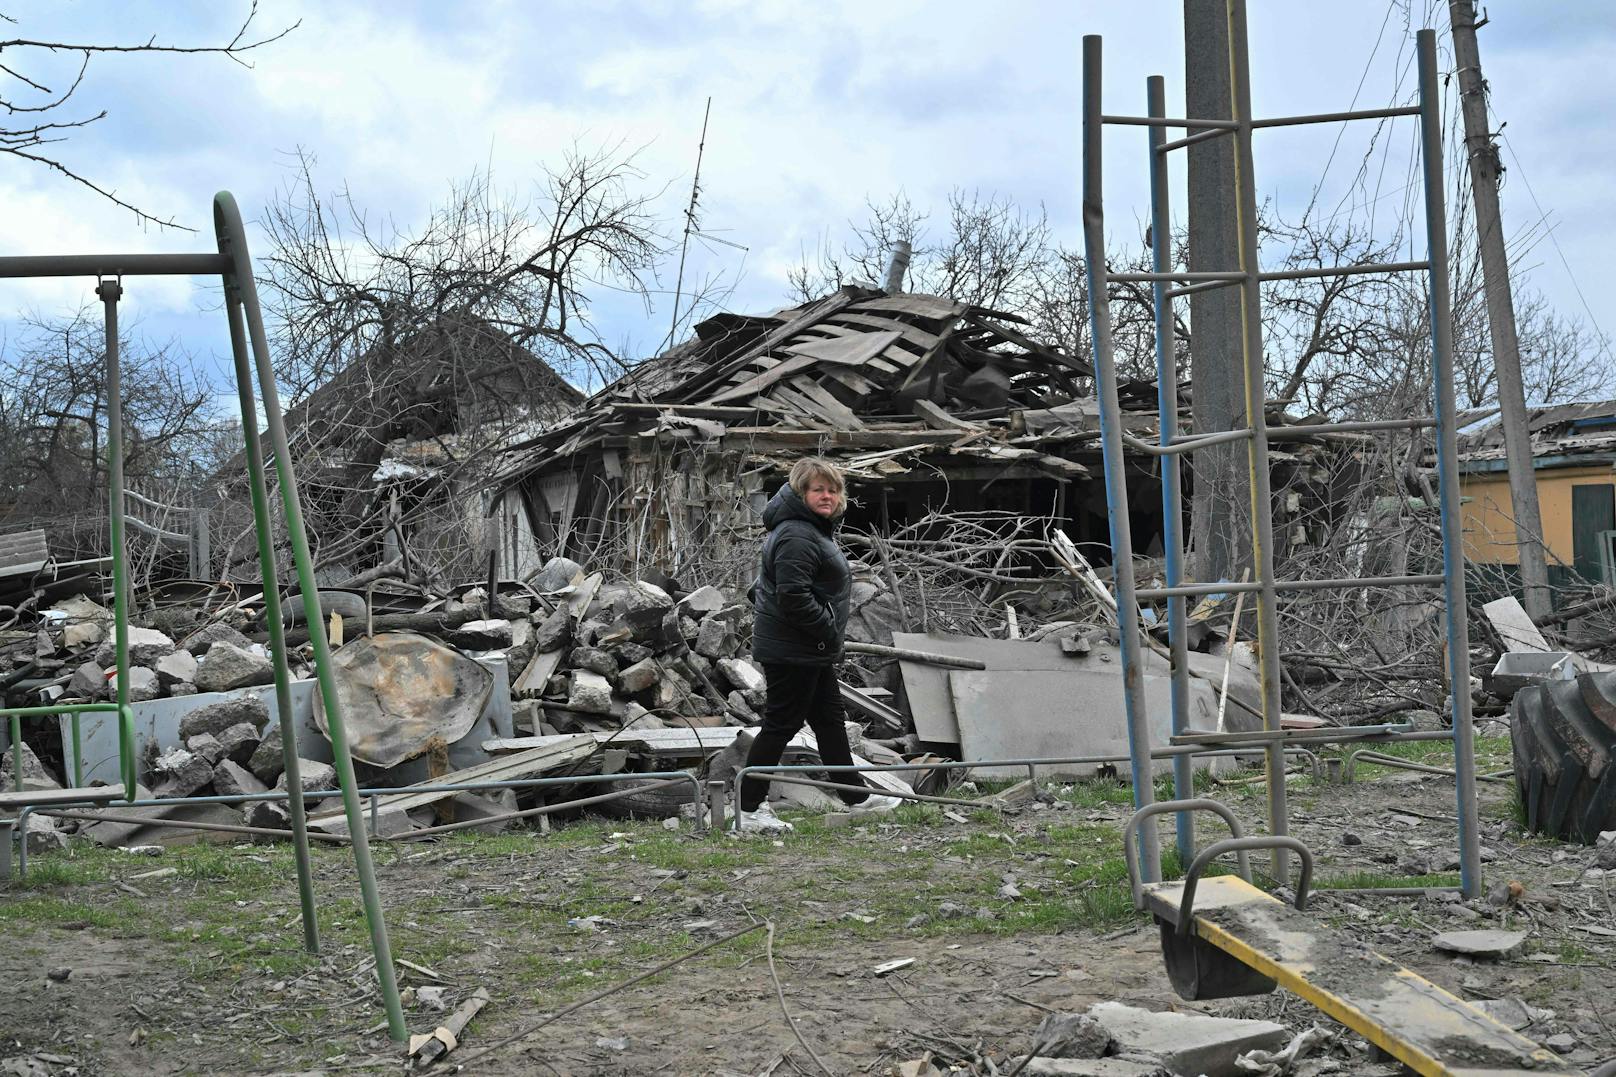 Die ukrainische Regierung hat Russland vorgeworfen, die östlichen Teile des Landes "auslöschen" zu wollen. Der ukrainische Präsident Wolodimir Selenski sagte, dass die russischen Soldaten "den Donbass buchstäblich erledigen und zerstören" wollten.